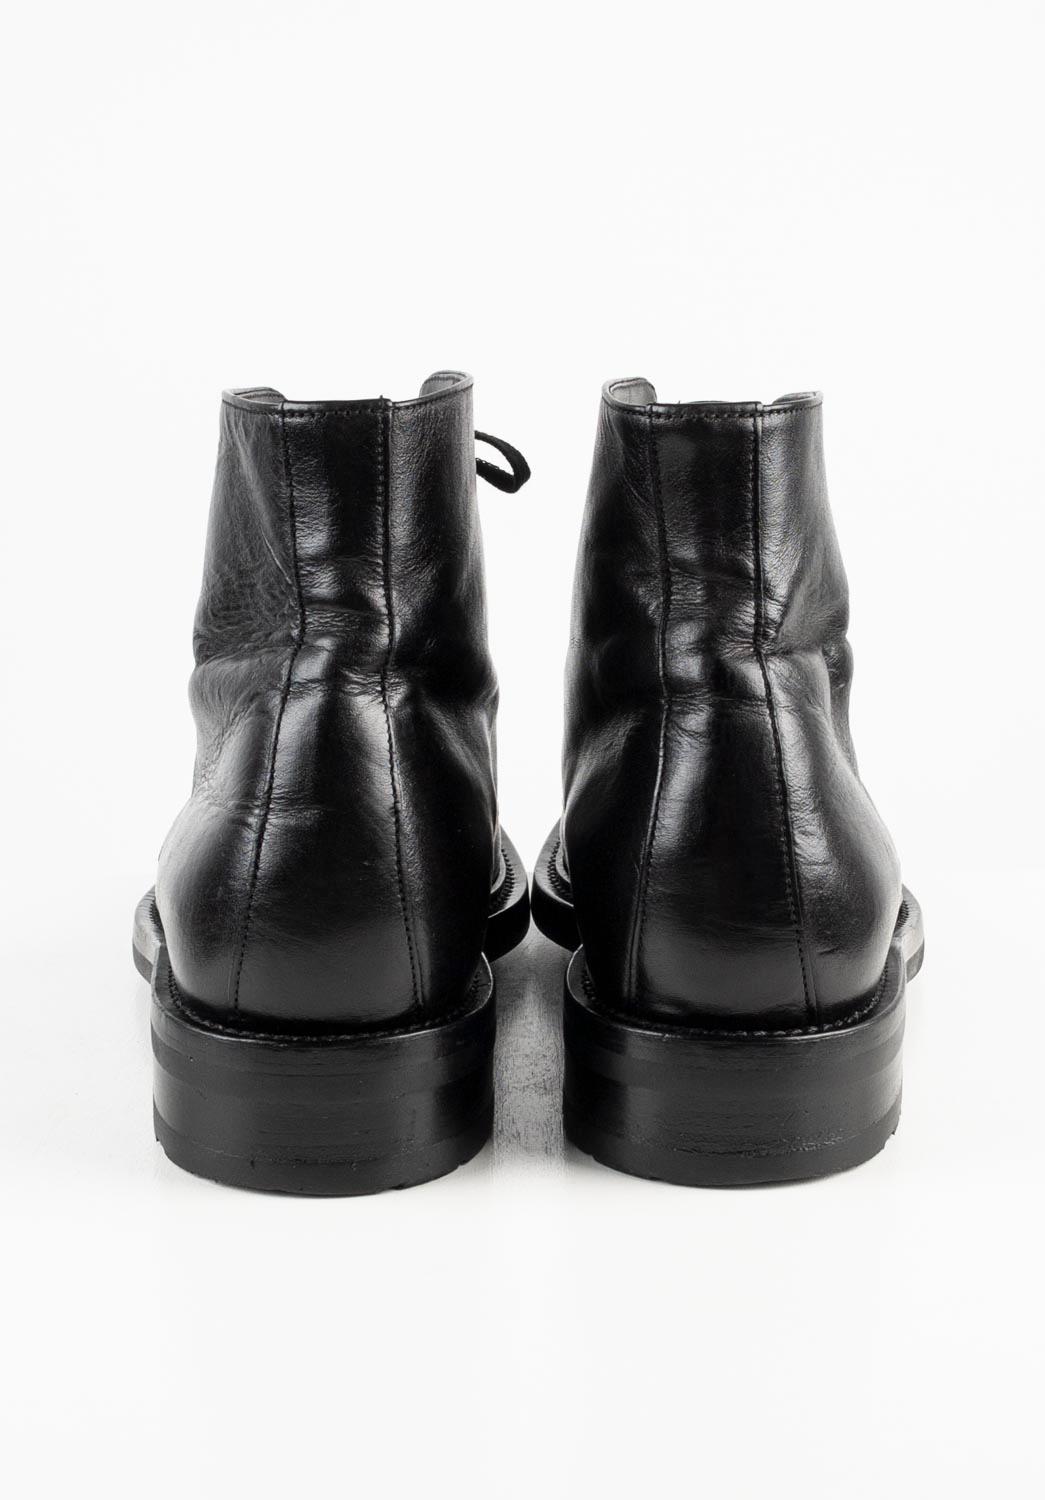 Saint Laurent Paris Men Shoes Miliary Boots Size EUR41, USA 7 ½, S563 For Sale 1